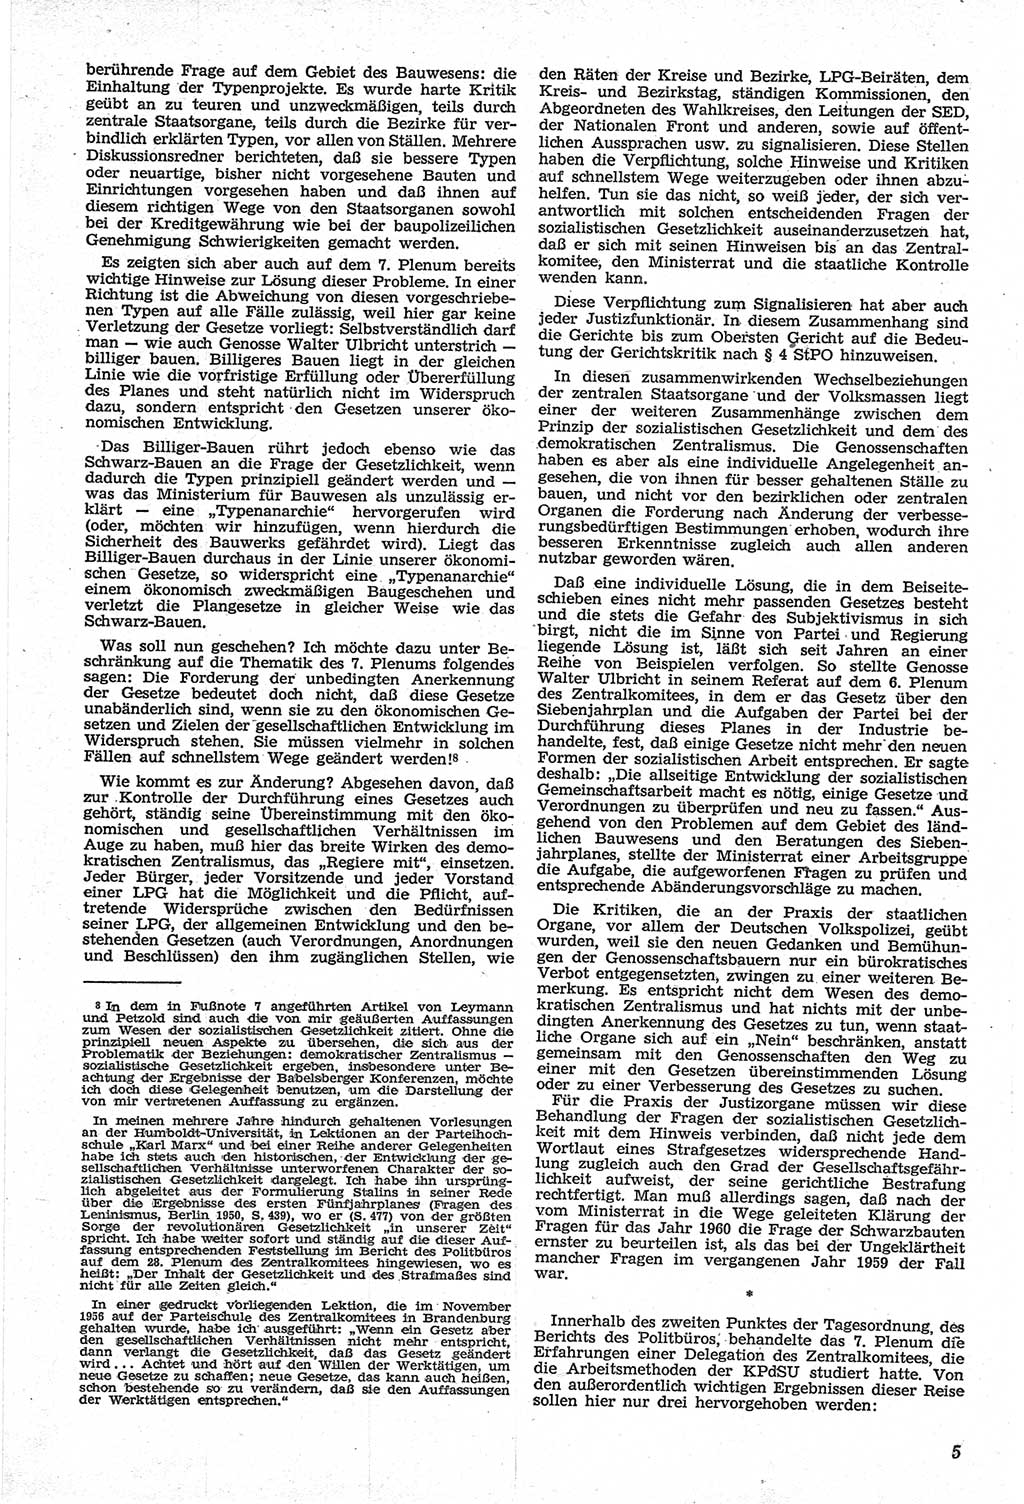 Neue Justiz (NJ), Zeitschrift für Recht und Rechtswissenschaft [Deutsche Demokratische Republik (DDR)], 14. Jahrgang 1960, Seite 5 (NJ DDR 1960, S. 5)